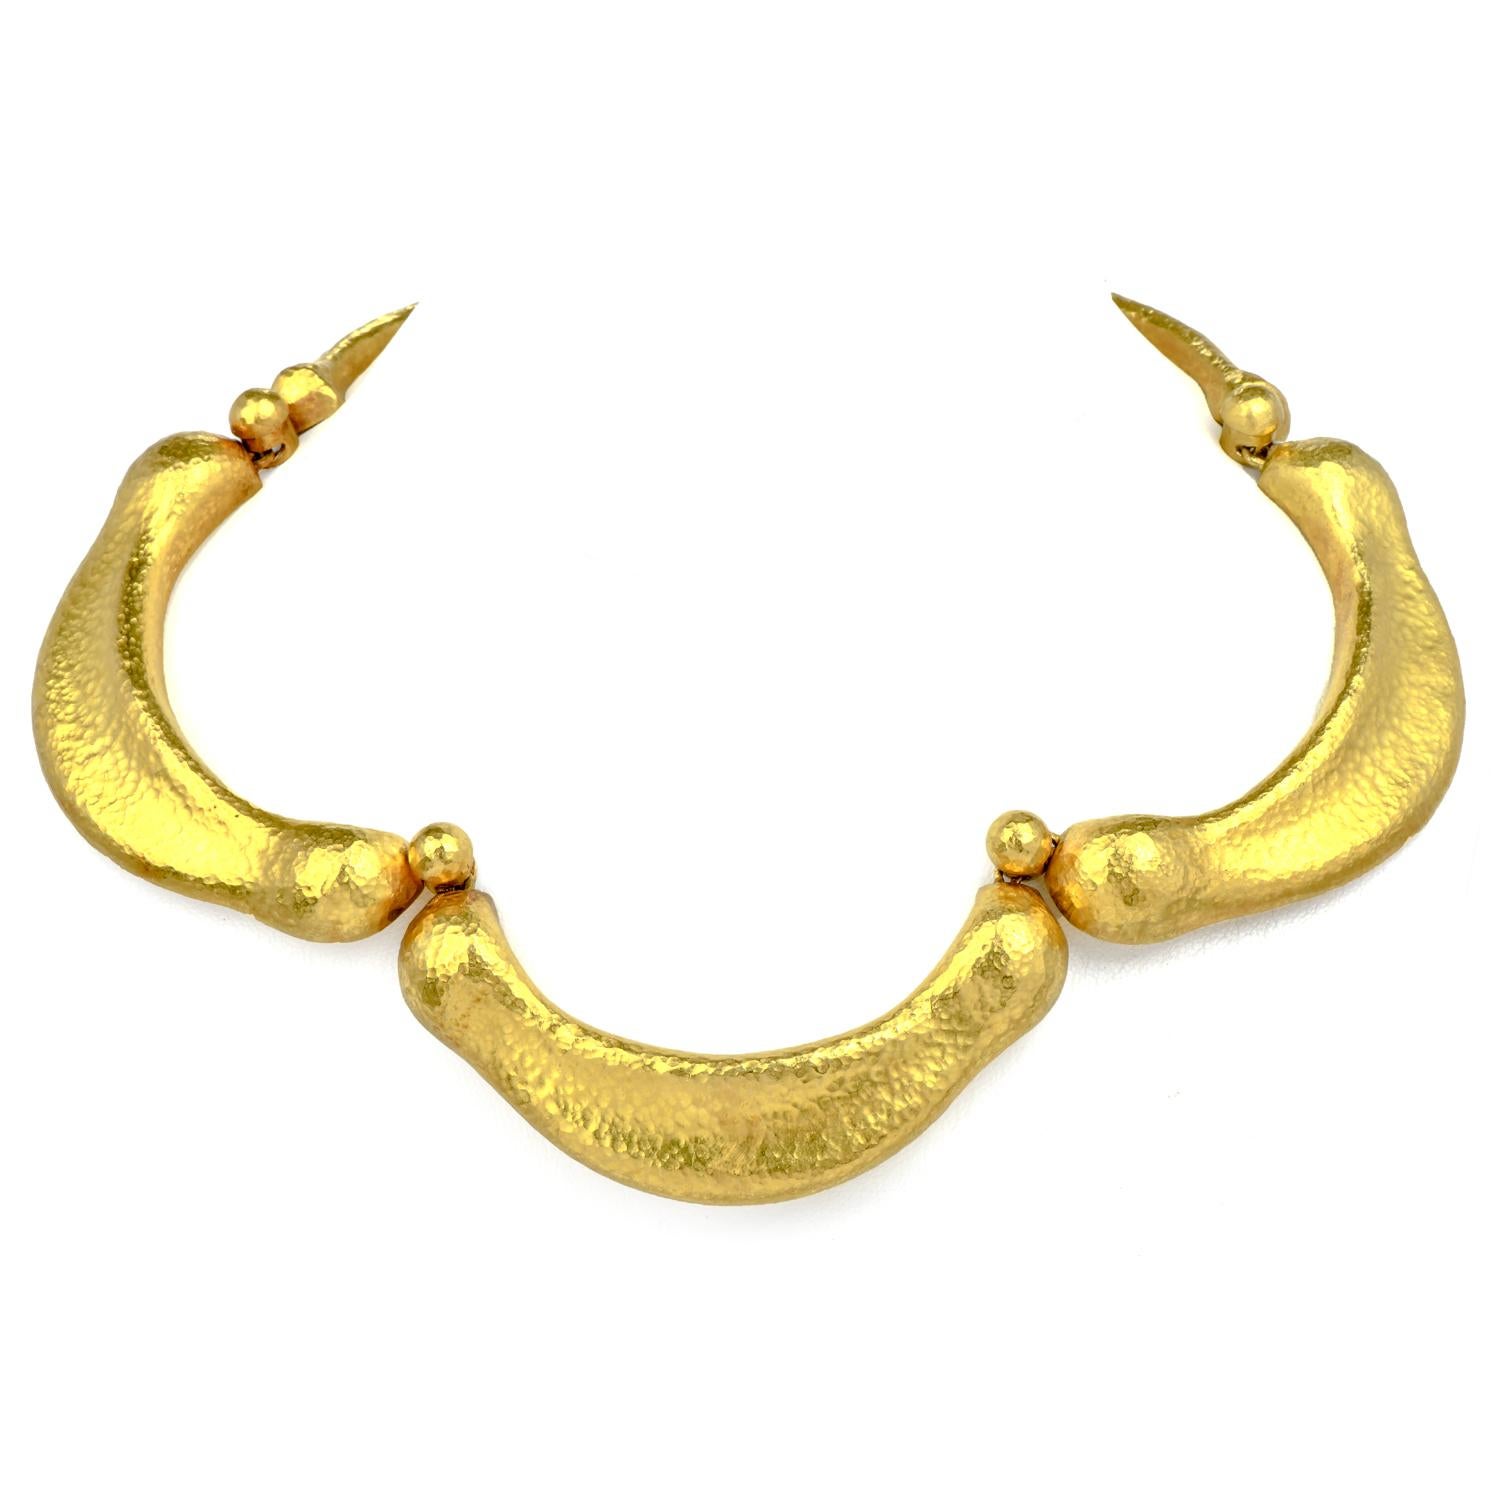 Atemberaubende Vintage Lalaounis griechischen 22K Gold Kragen Halskette 

Wurde in 22K Gelbgold gefertigt. Mit strukturiertem Stil und drei großen Gliedern.

Die Halskette wiegt 132,8 Gramm und misst 17 Zoll im Innenumfang.

Ilias Lalaounis hat sein